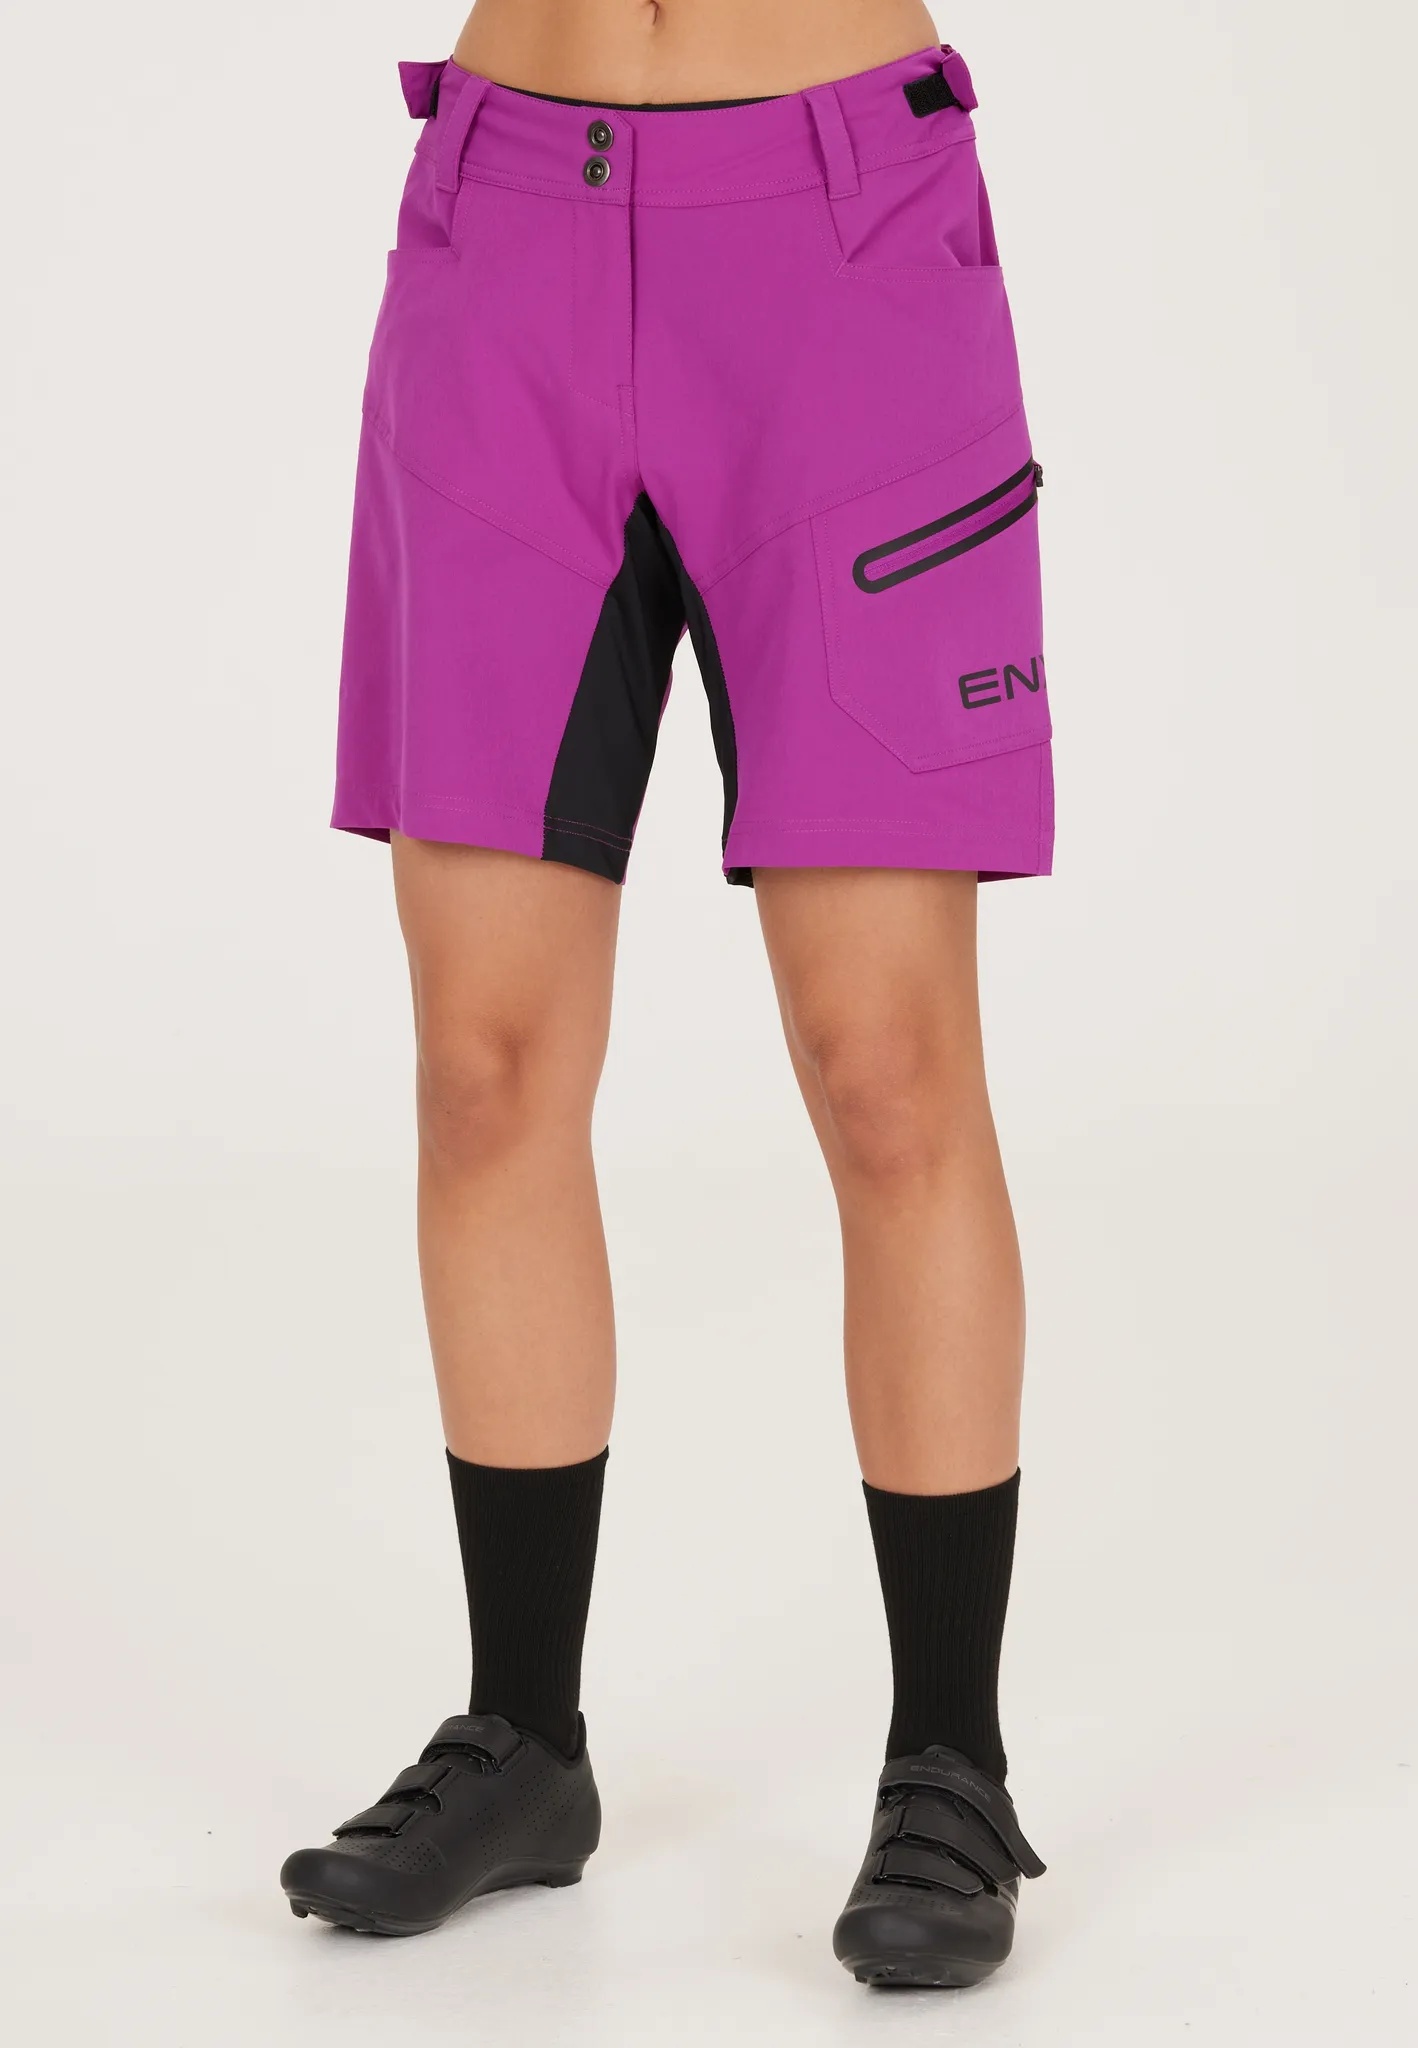 Radhose ENDURANCE "Jamilla W 2 in 1 Shorts" Gr. 44, EURO-Größen, lila Damen Hosen Sporthosen mit herausnehmbarer Innen-Tights